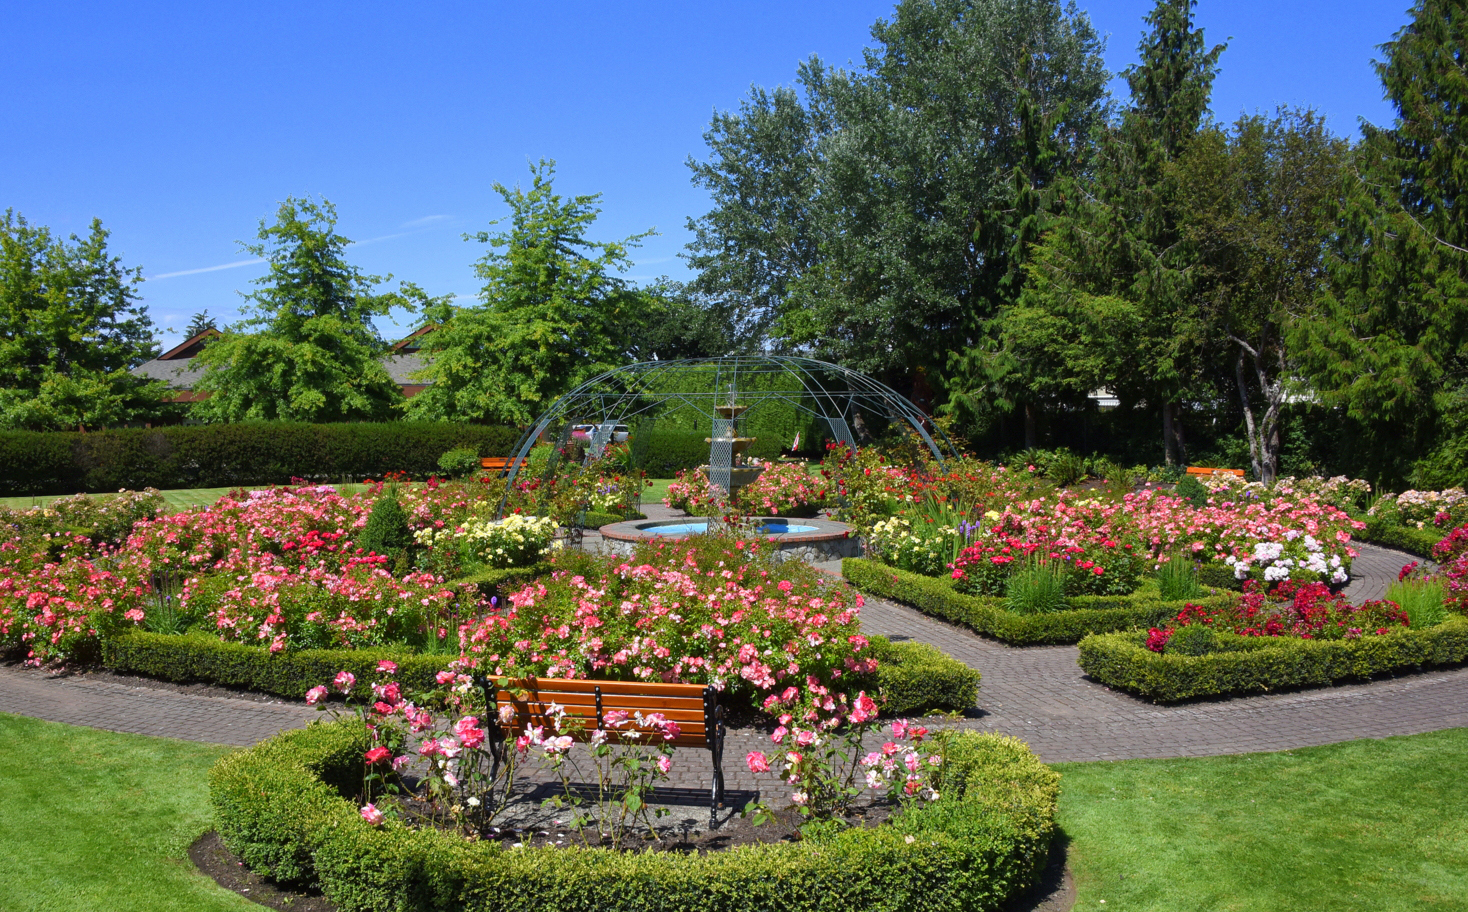  Rose Garden Fountain and Bench 